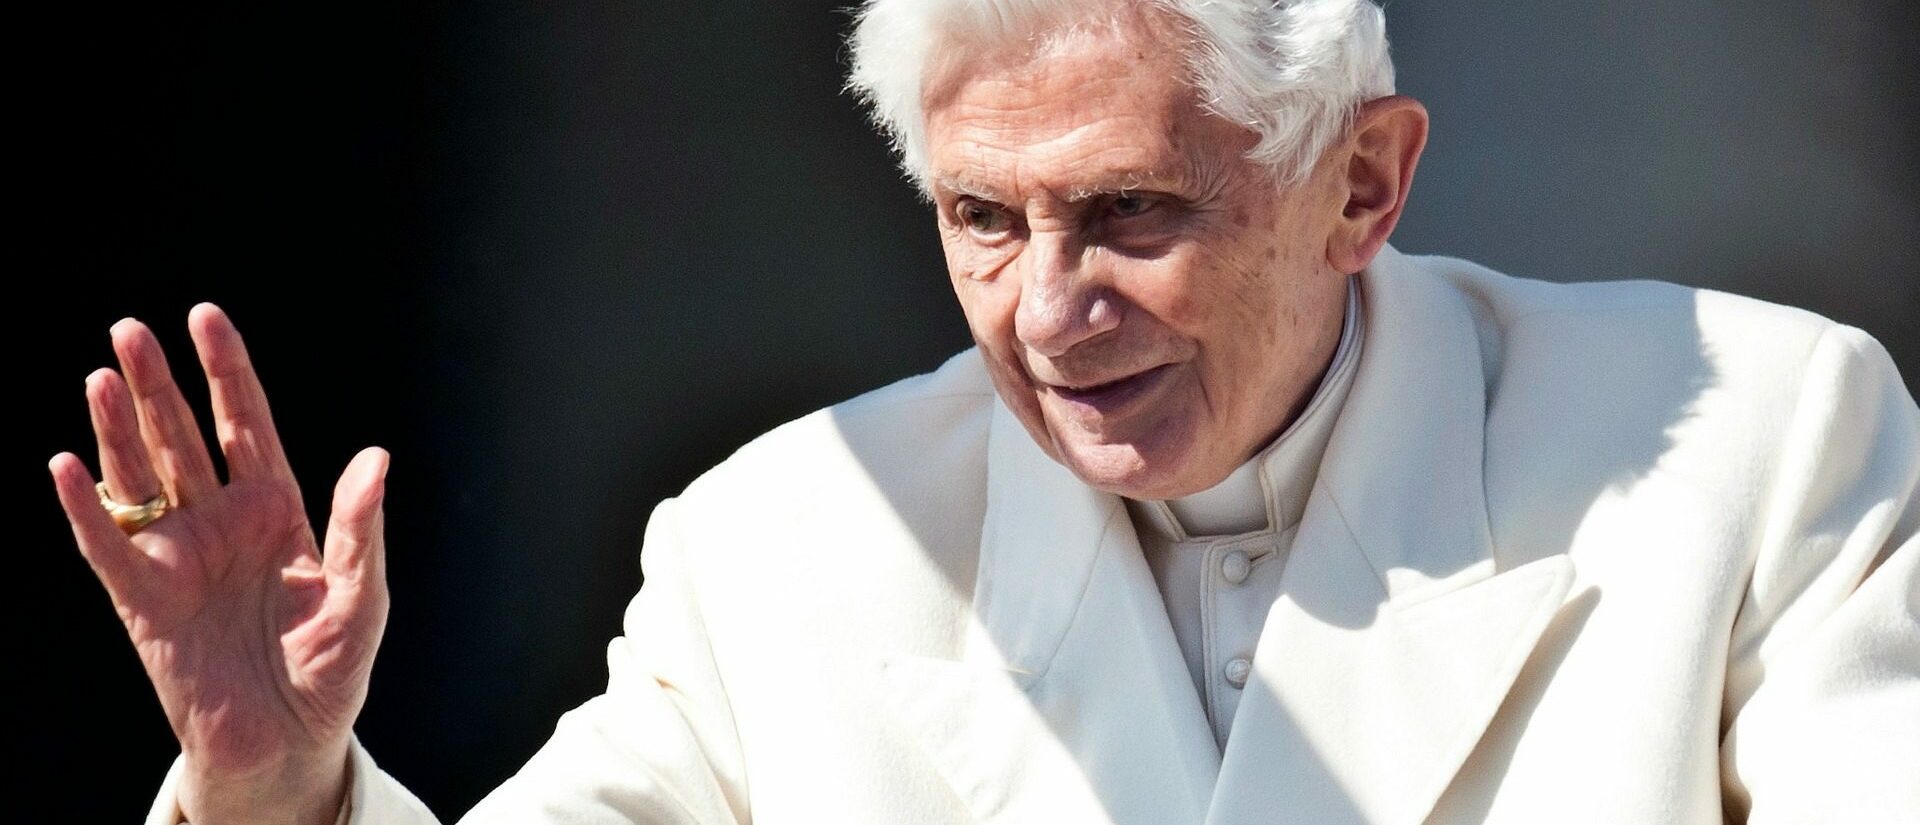 Le 5 septembre 2020, le pape émérite Benoît XVI deviendra le pontife le plus âgé de l'histoire | © Catholic Church of England/Flickr/CC BY-NC-SA 2.0